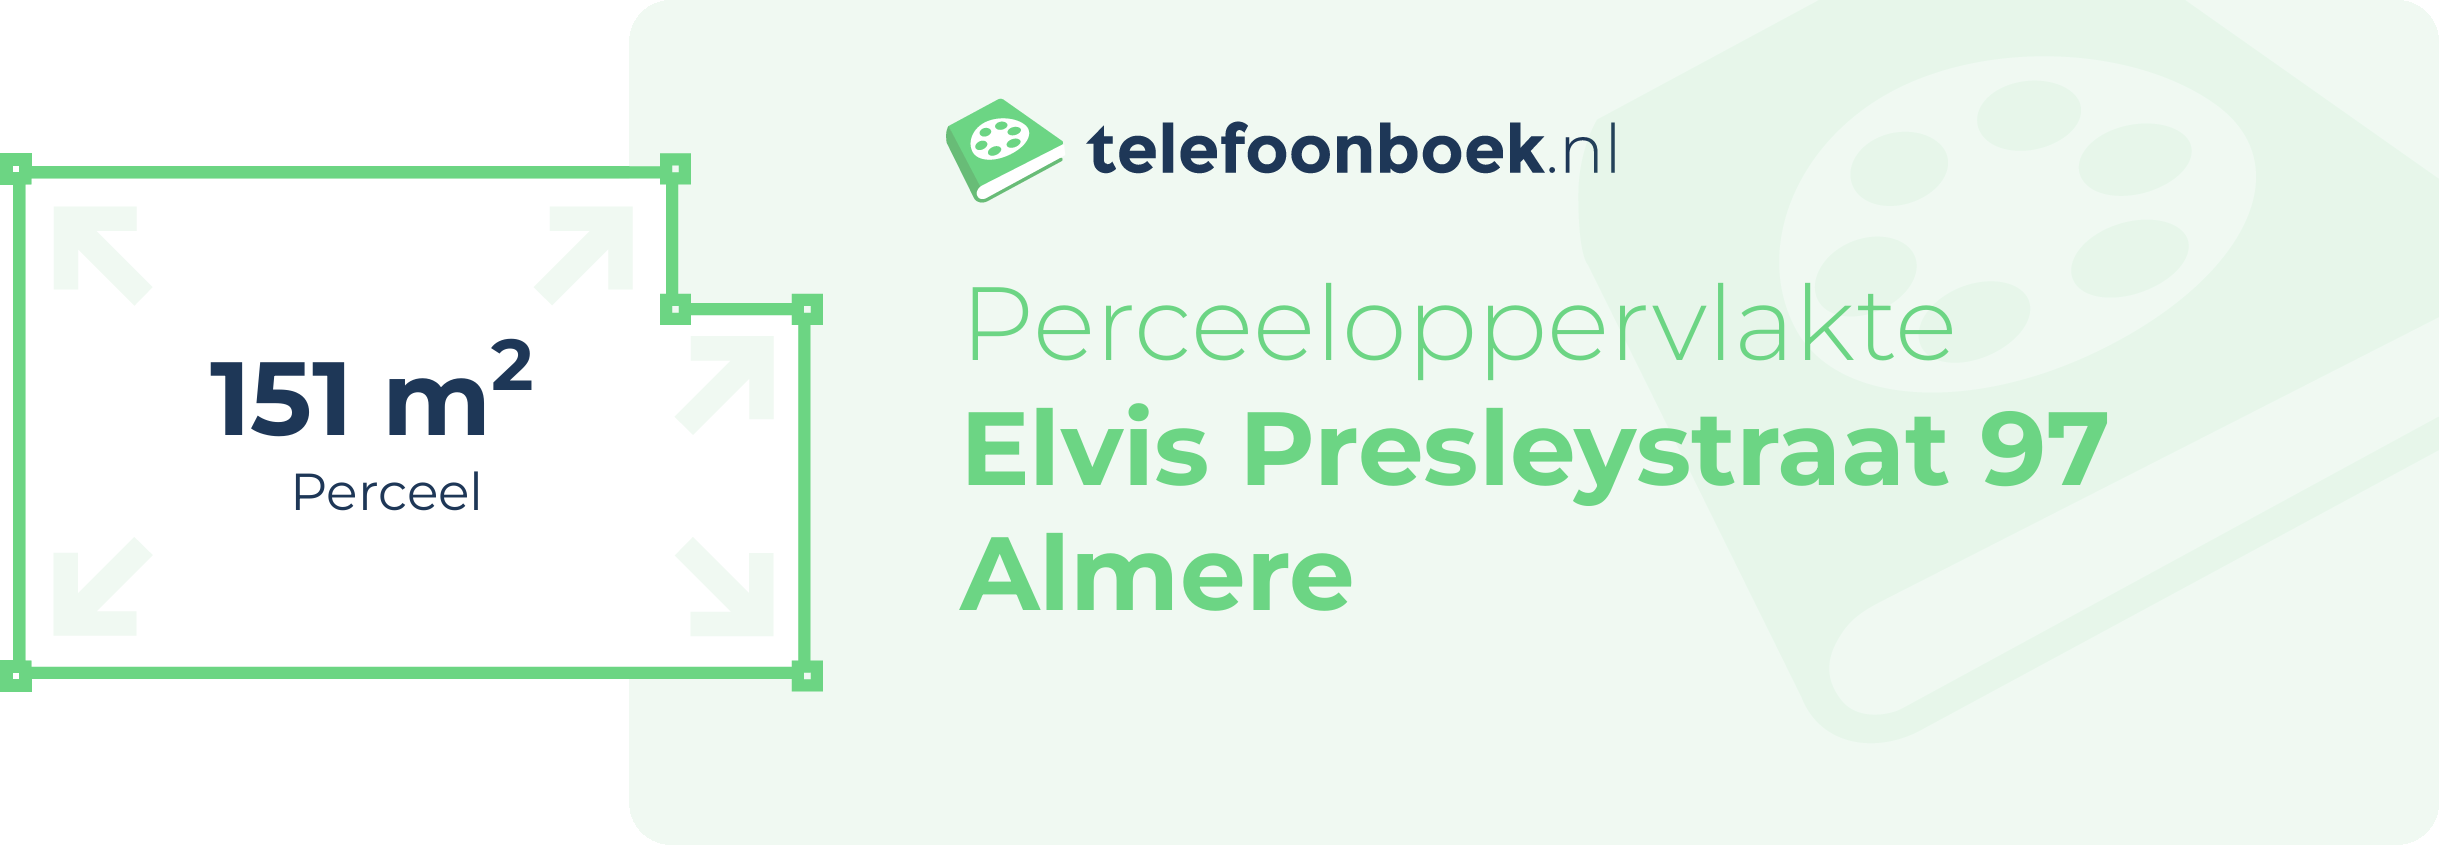 Perceeloppervlakte Elvis Presleystraat 97 Almere